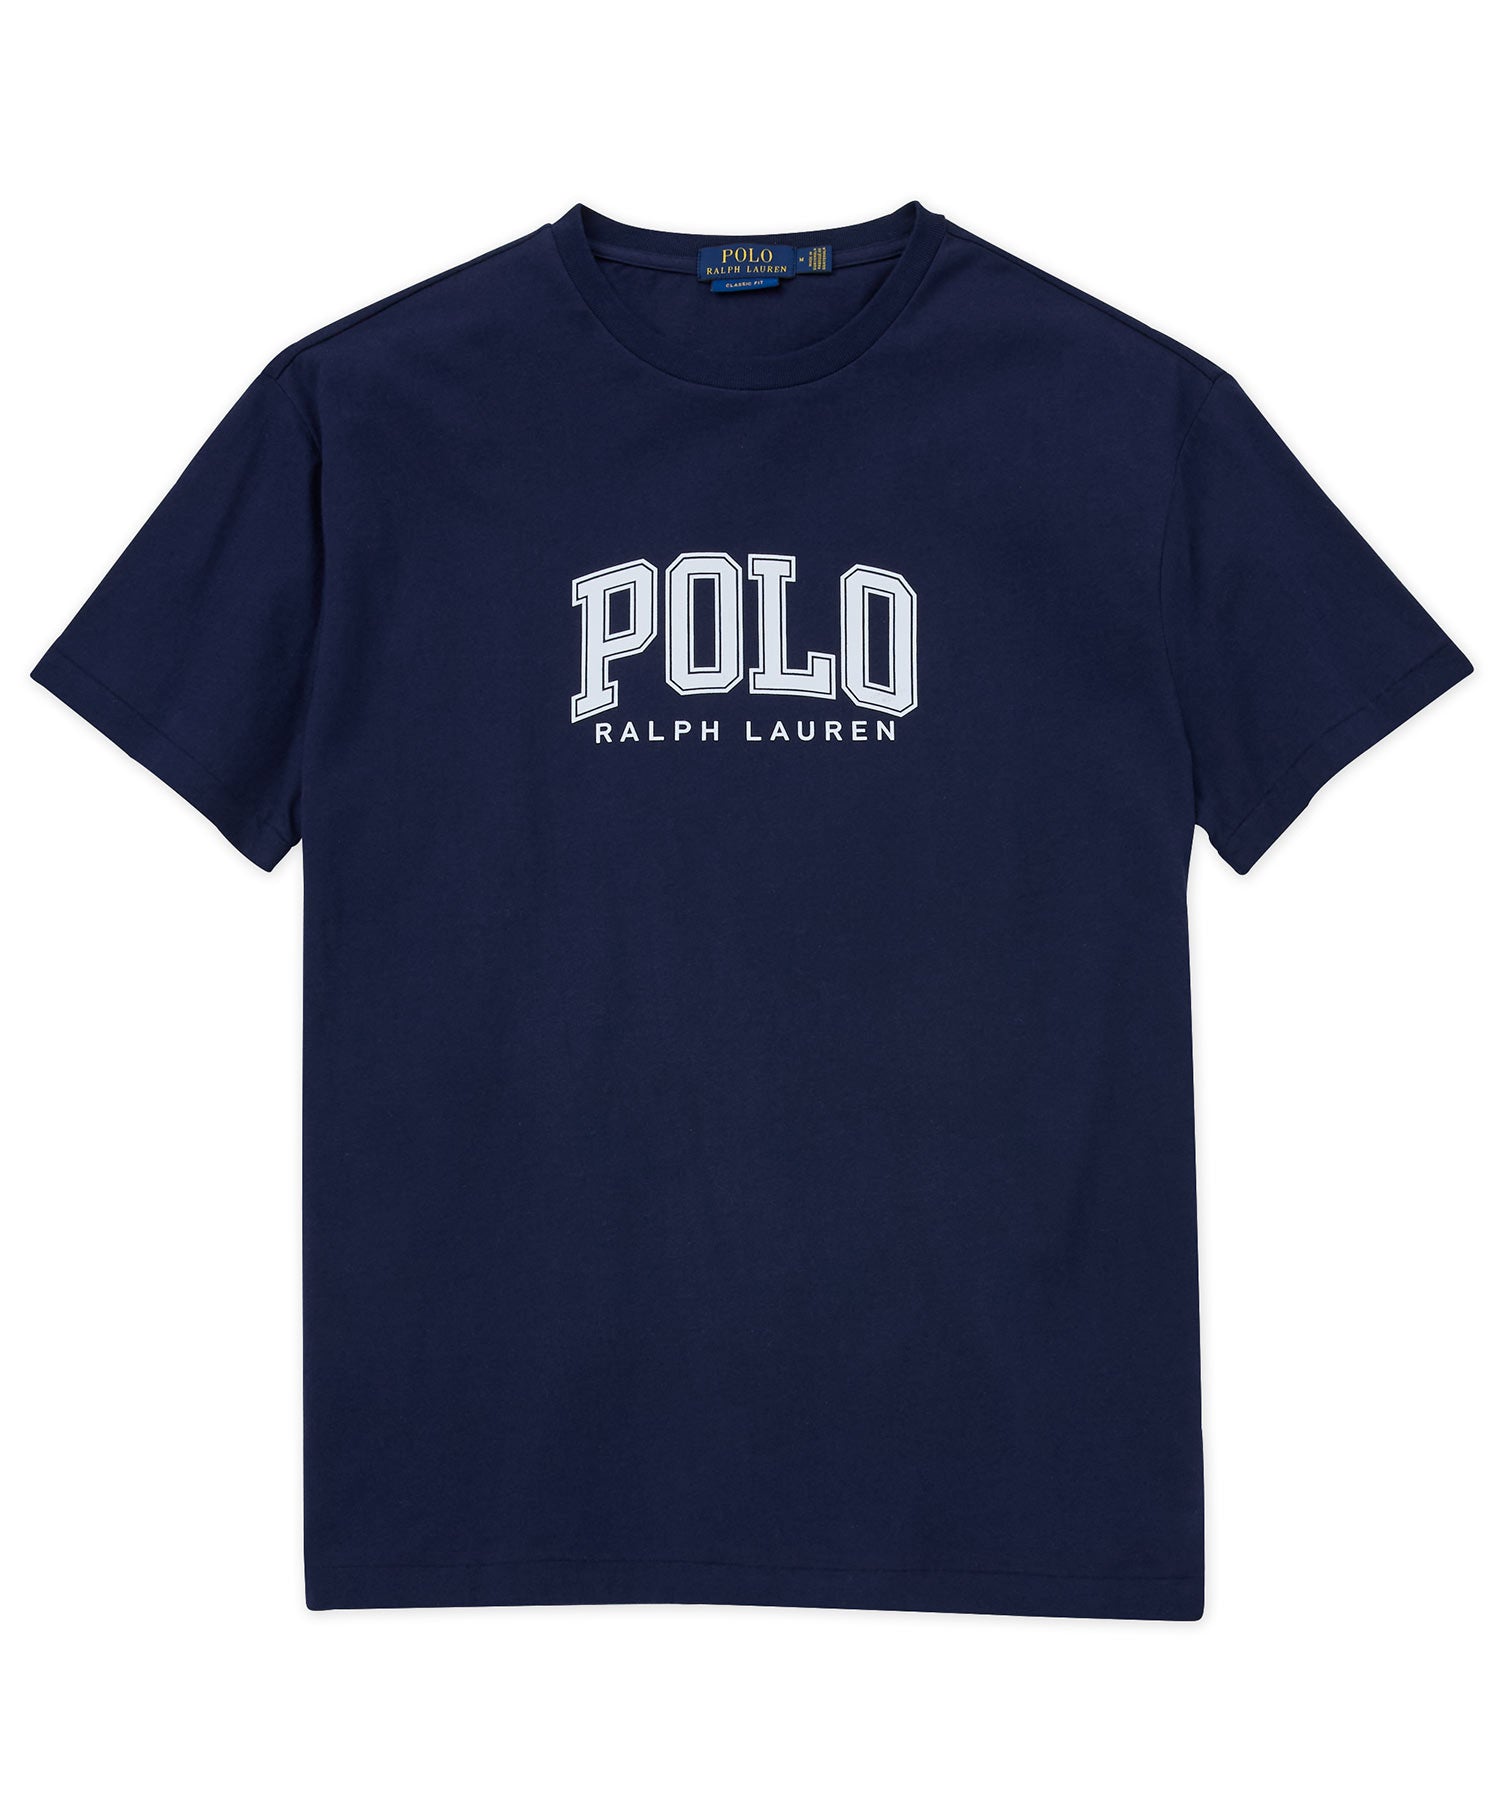 Polo Ralph Lauren Short Sleeve Graphic T-Shirt, Men's Big & Tall